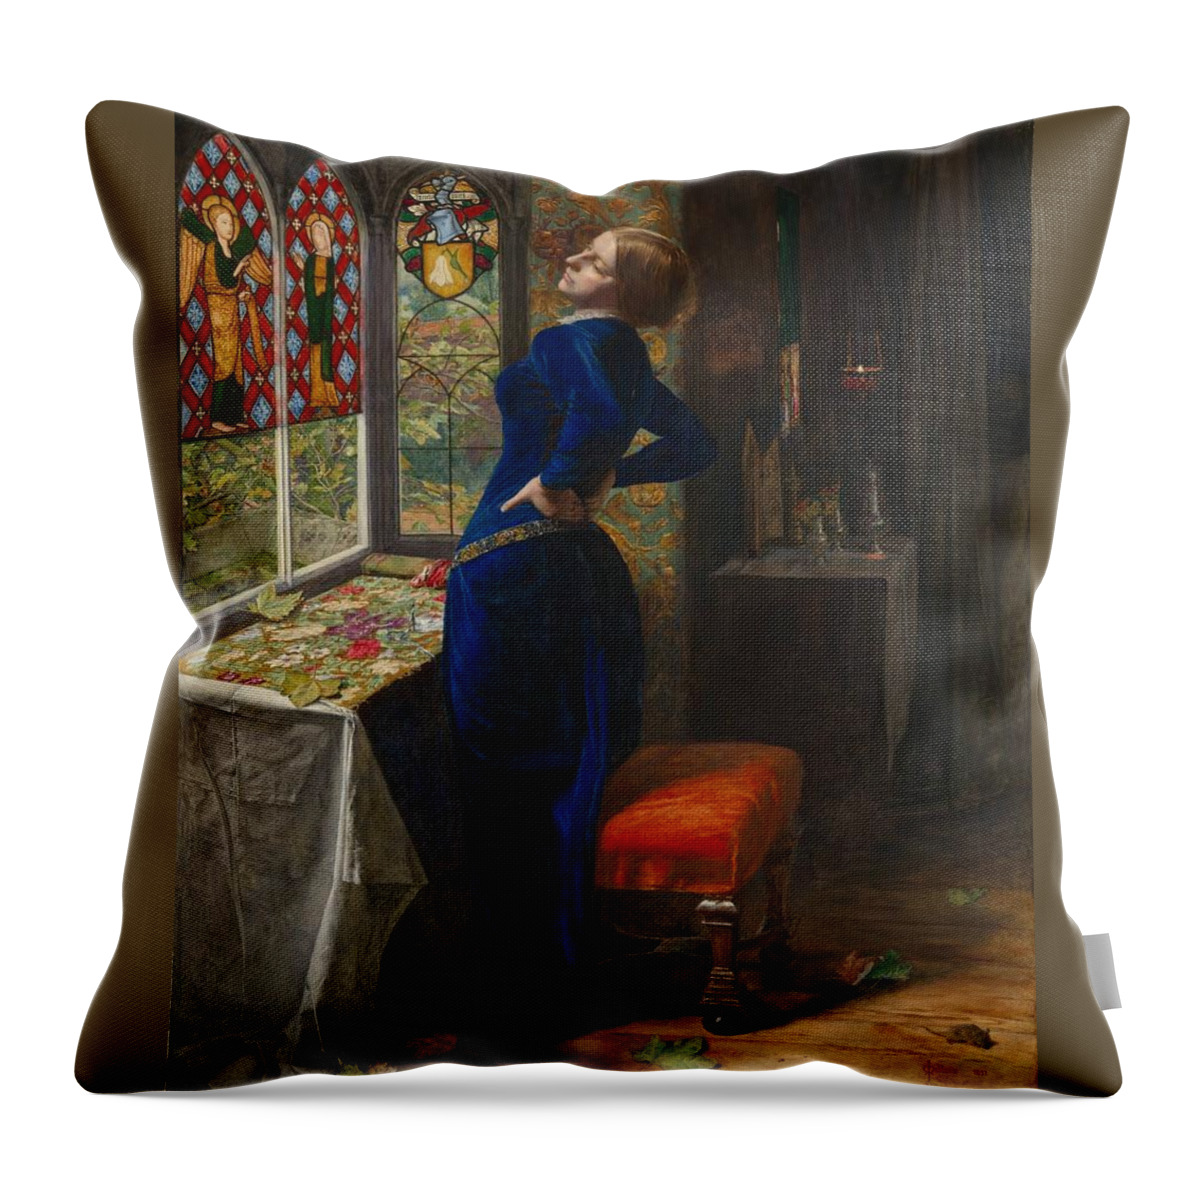 Sir John Everett Millais Throw Pillow featuring the painting Mariana by John Everett Millais